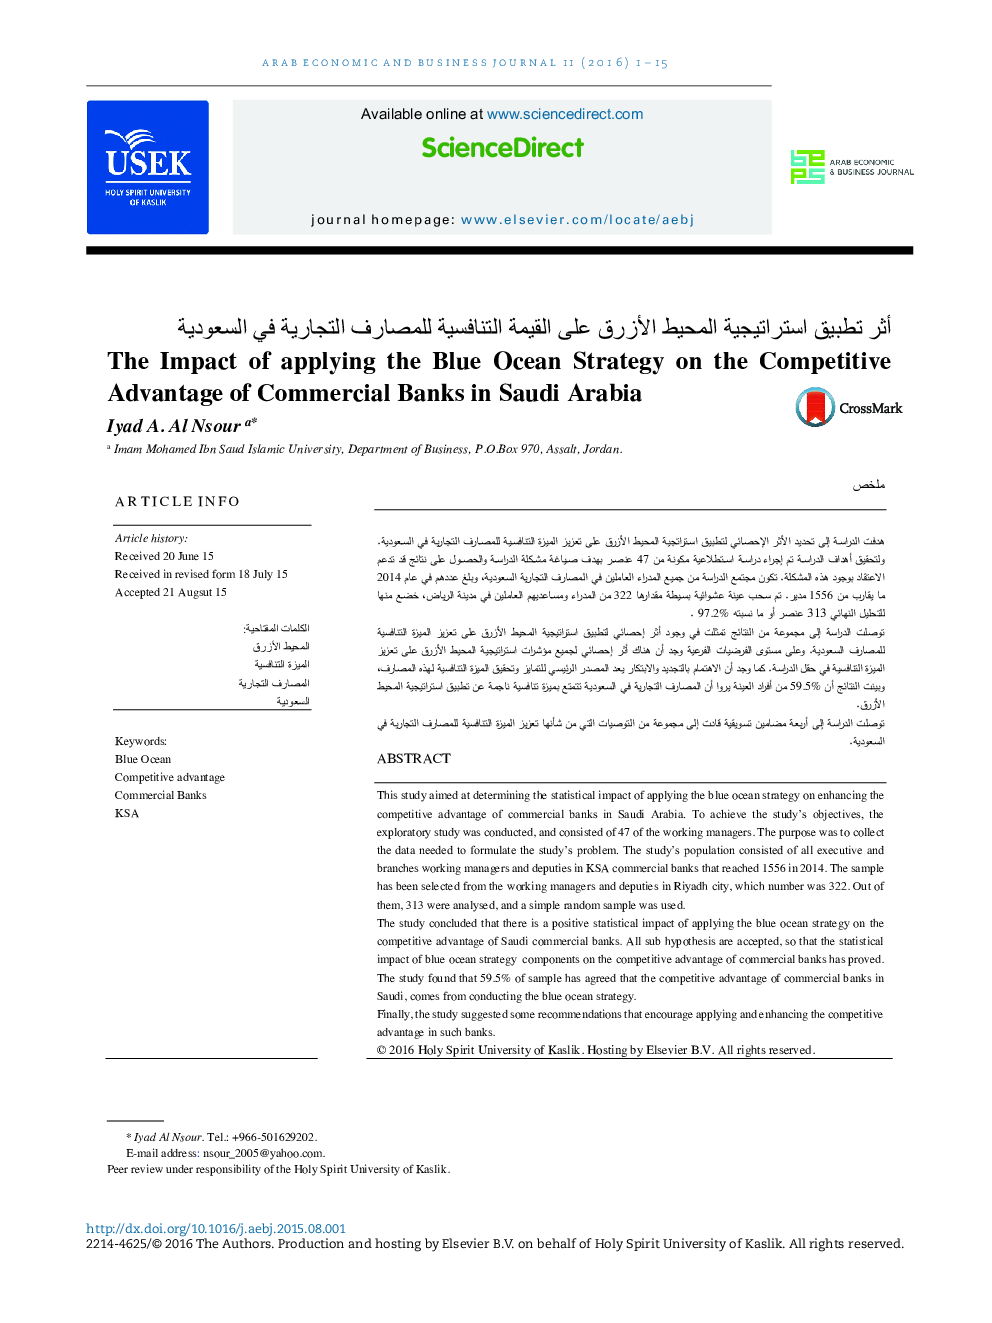 تأثیر کاربرد استراتژی اقیانوس آبی بر سود رقابتی بانک های تجاری در عربستان سعودی 